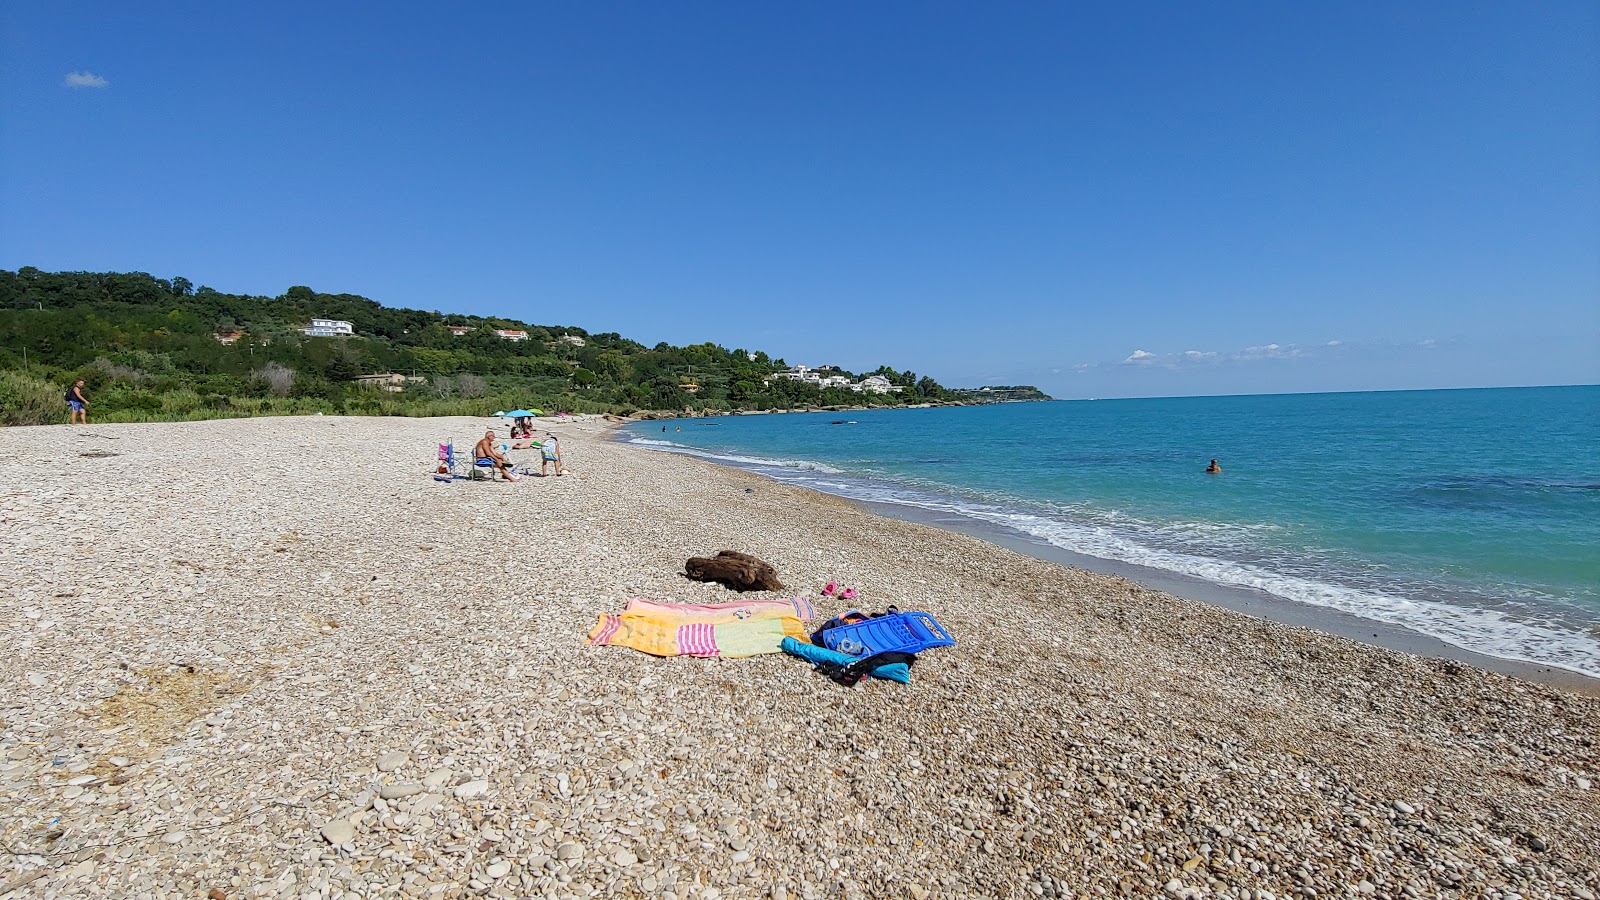 Spiaggia di San Nicola'in fotoğrafı çok temiz temizlik seviyesi ile